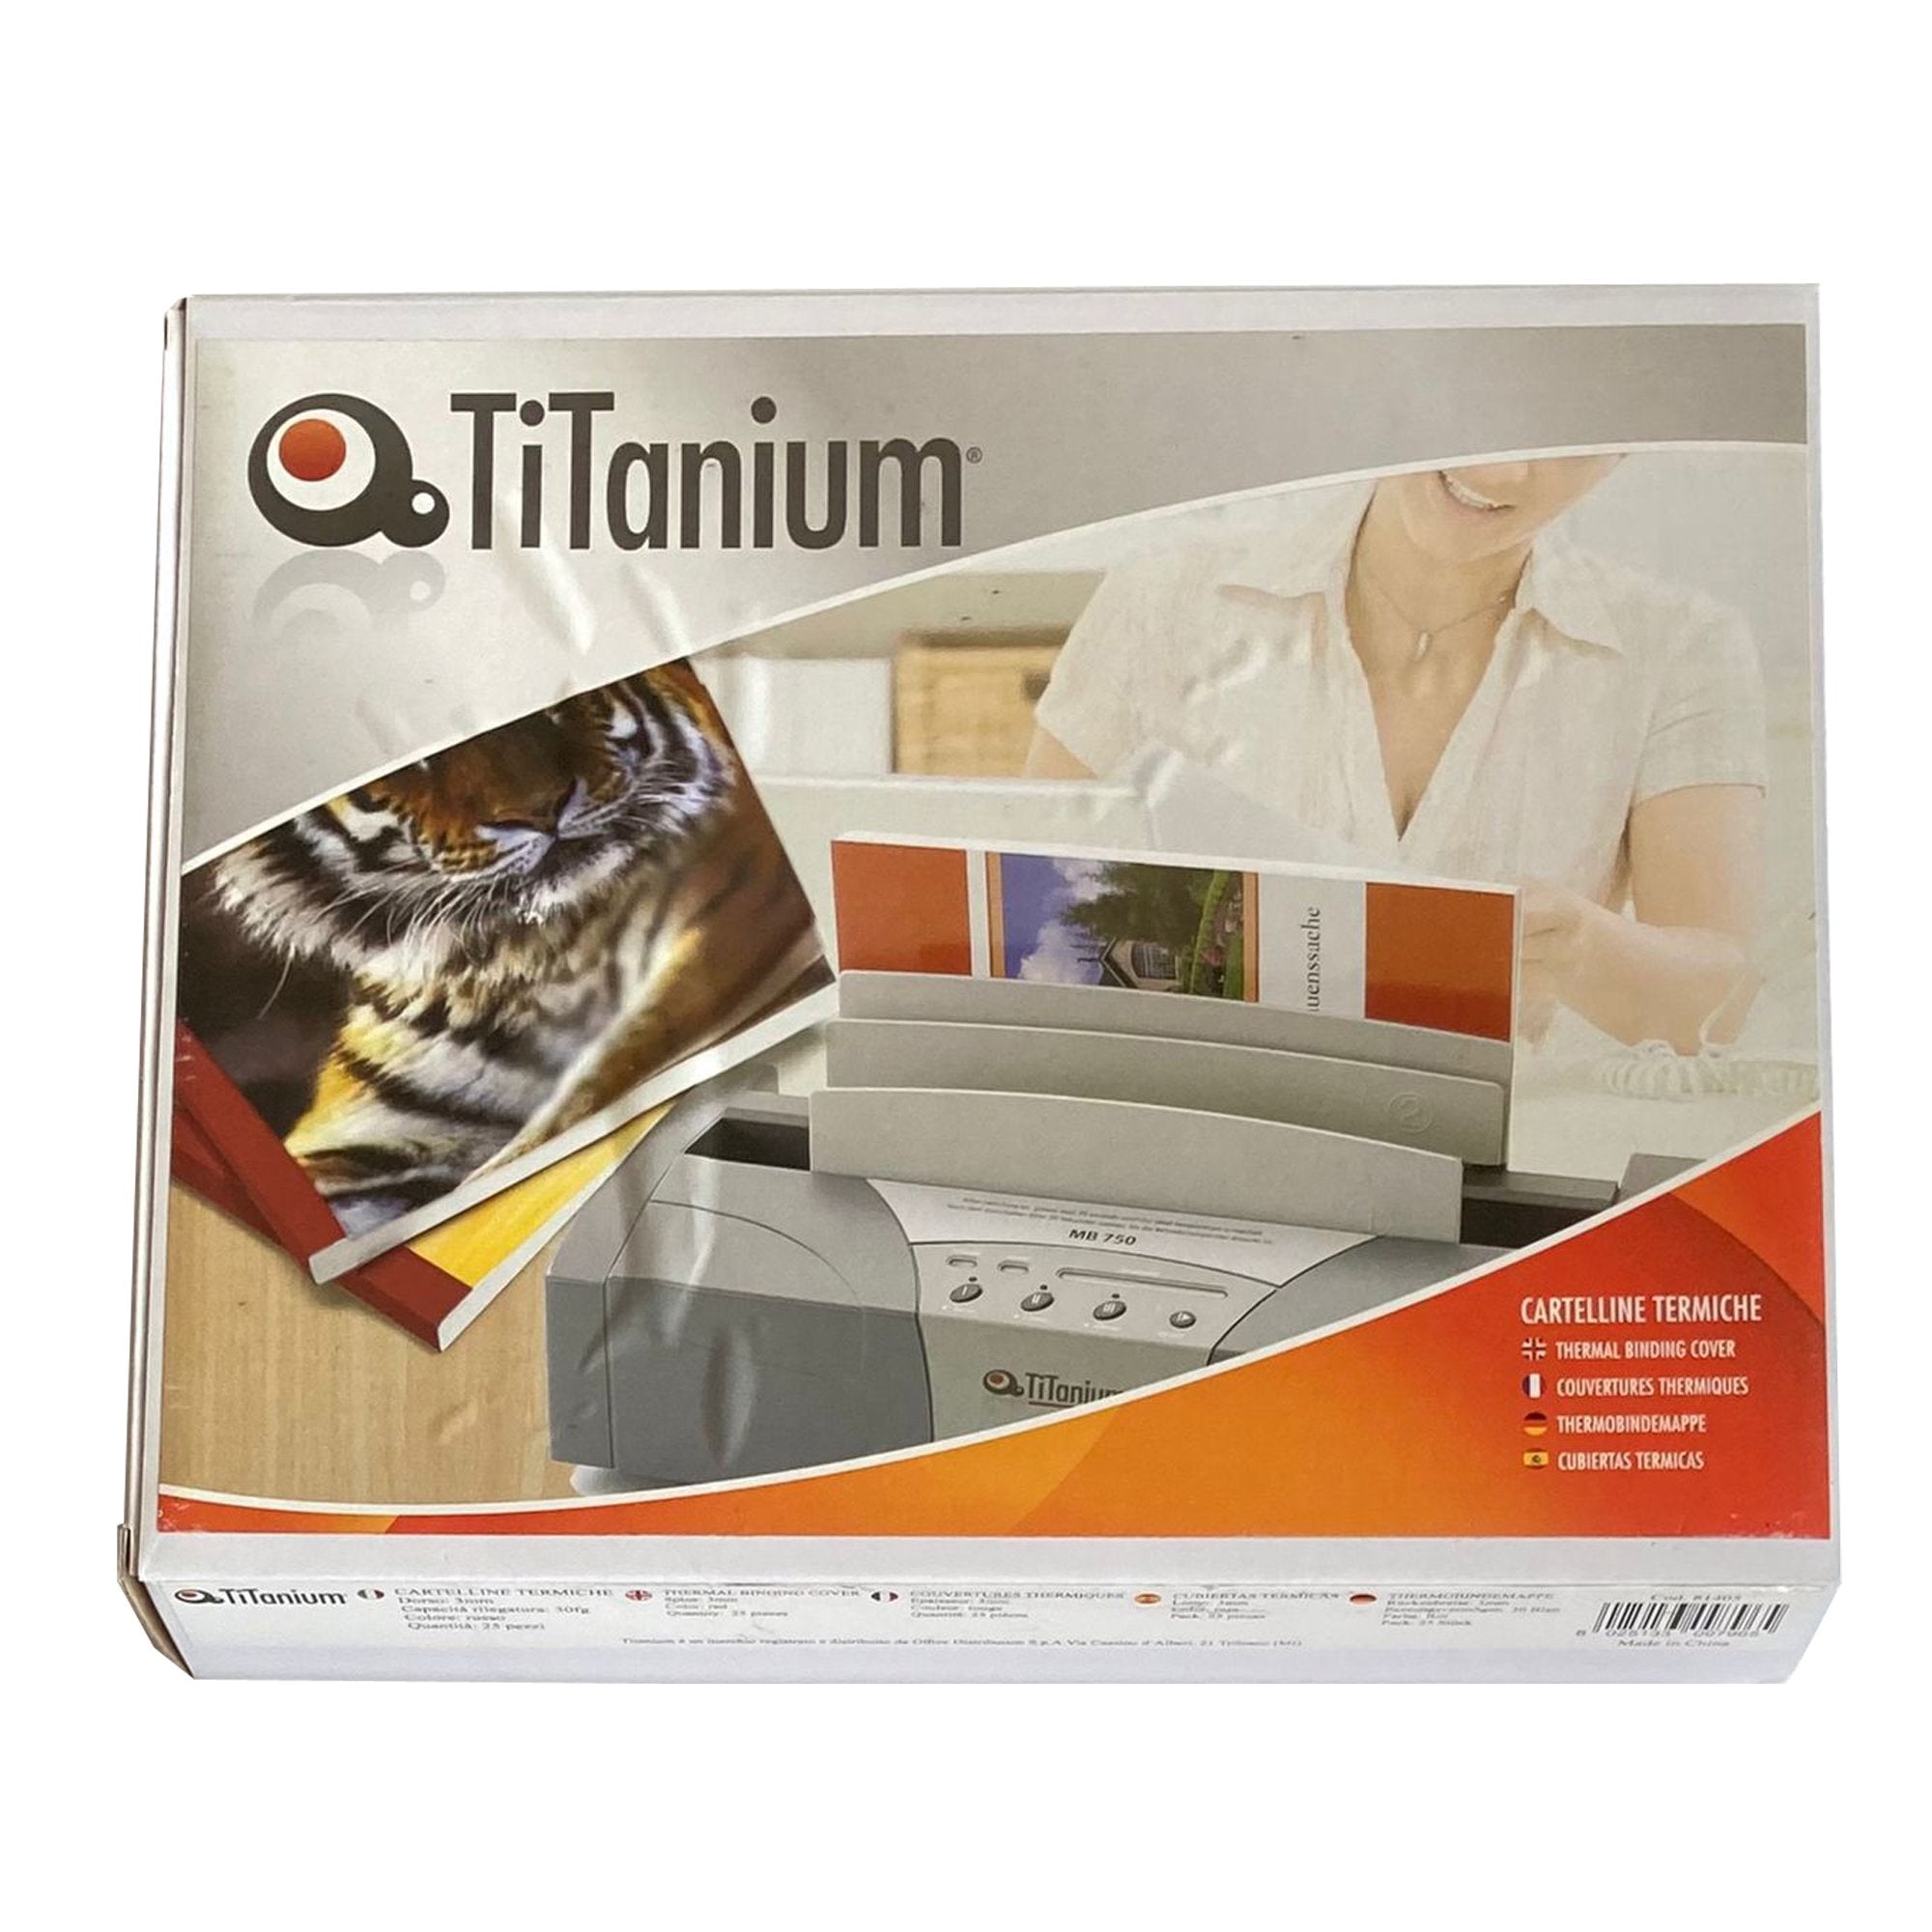 titanium-25-cartelline-termiche-6mm-blu-grain